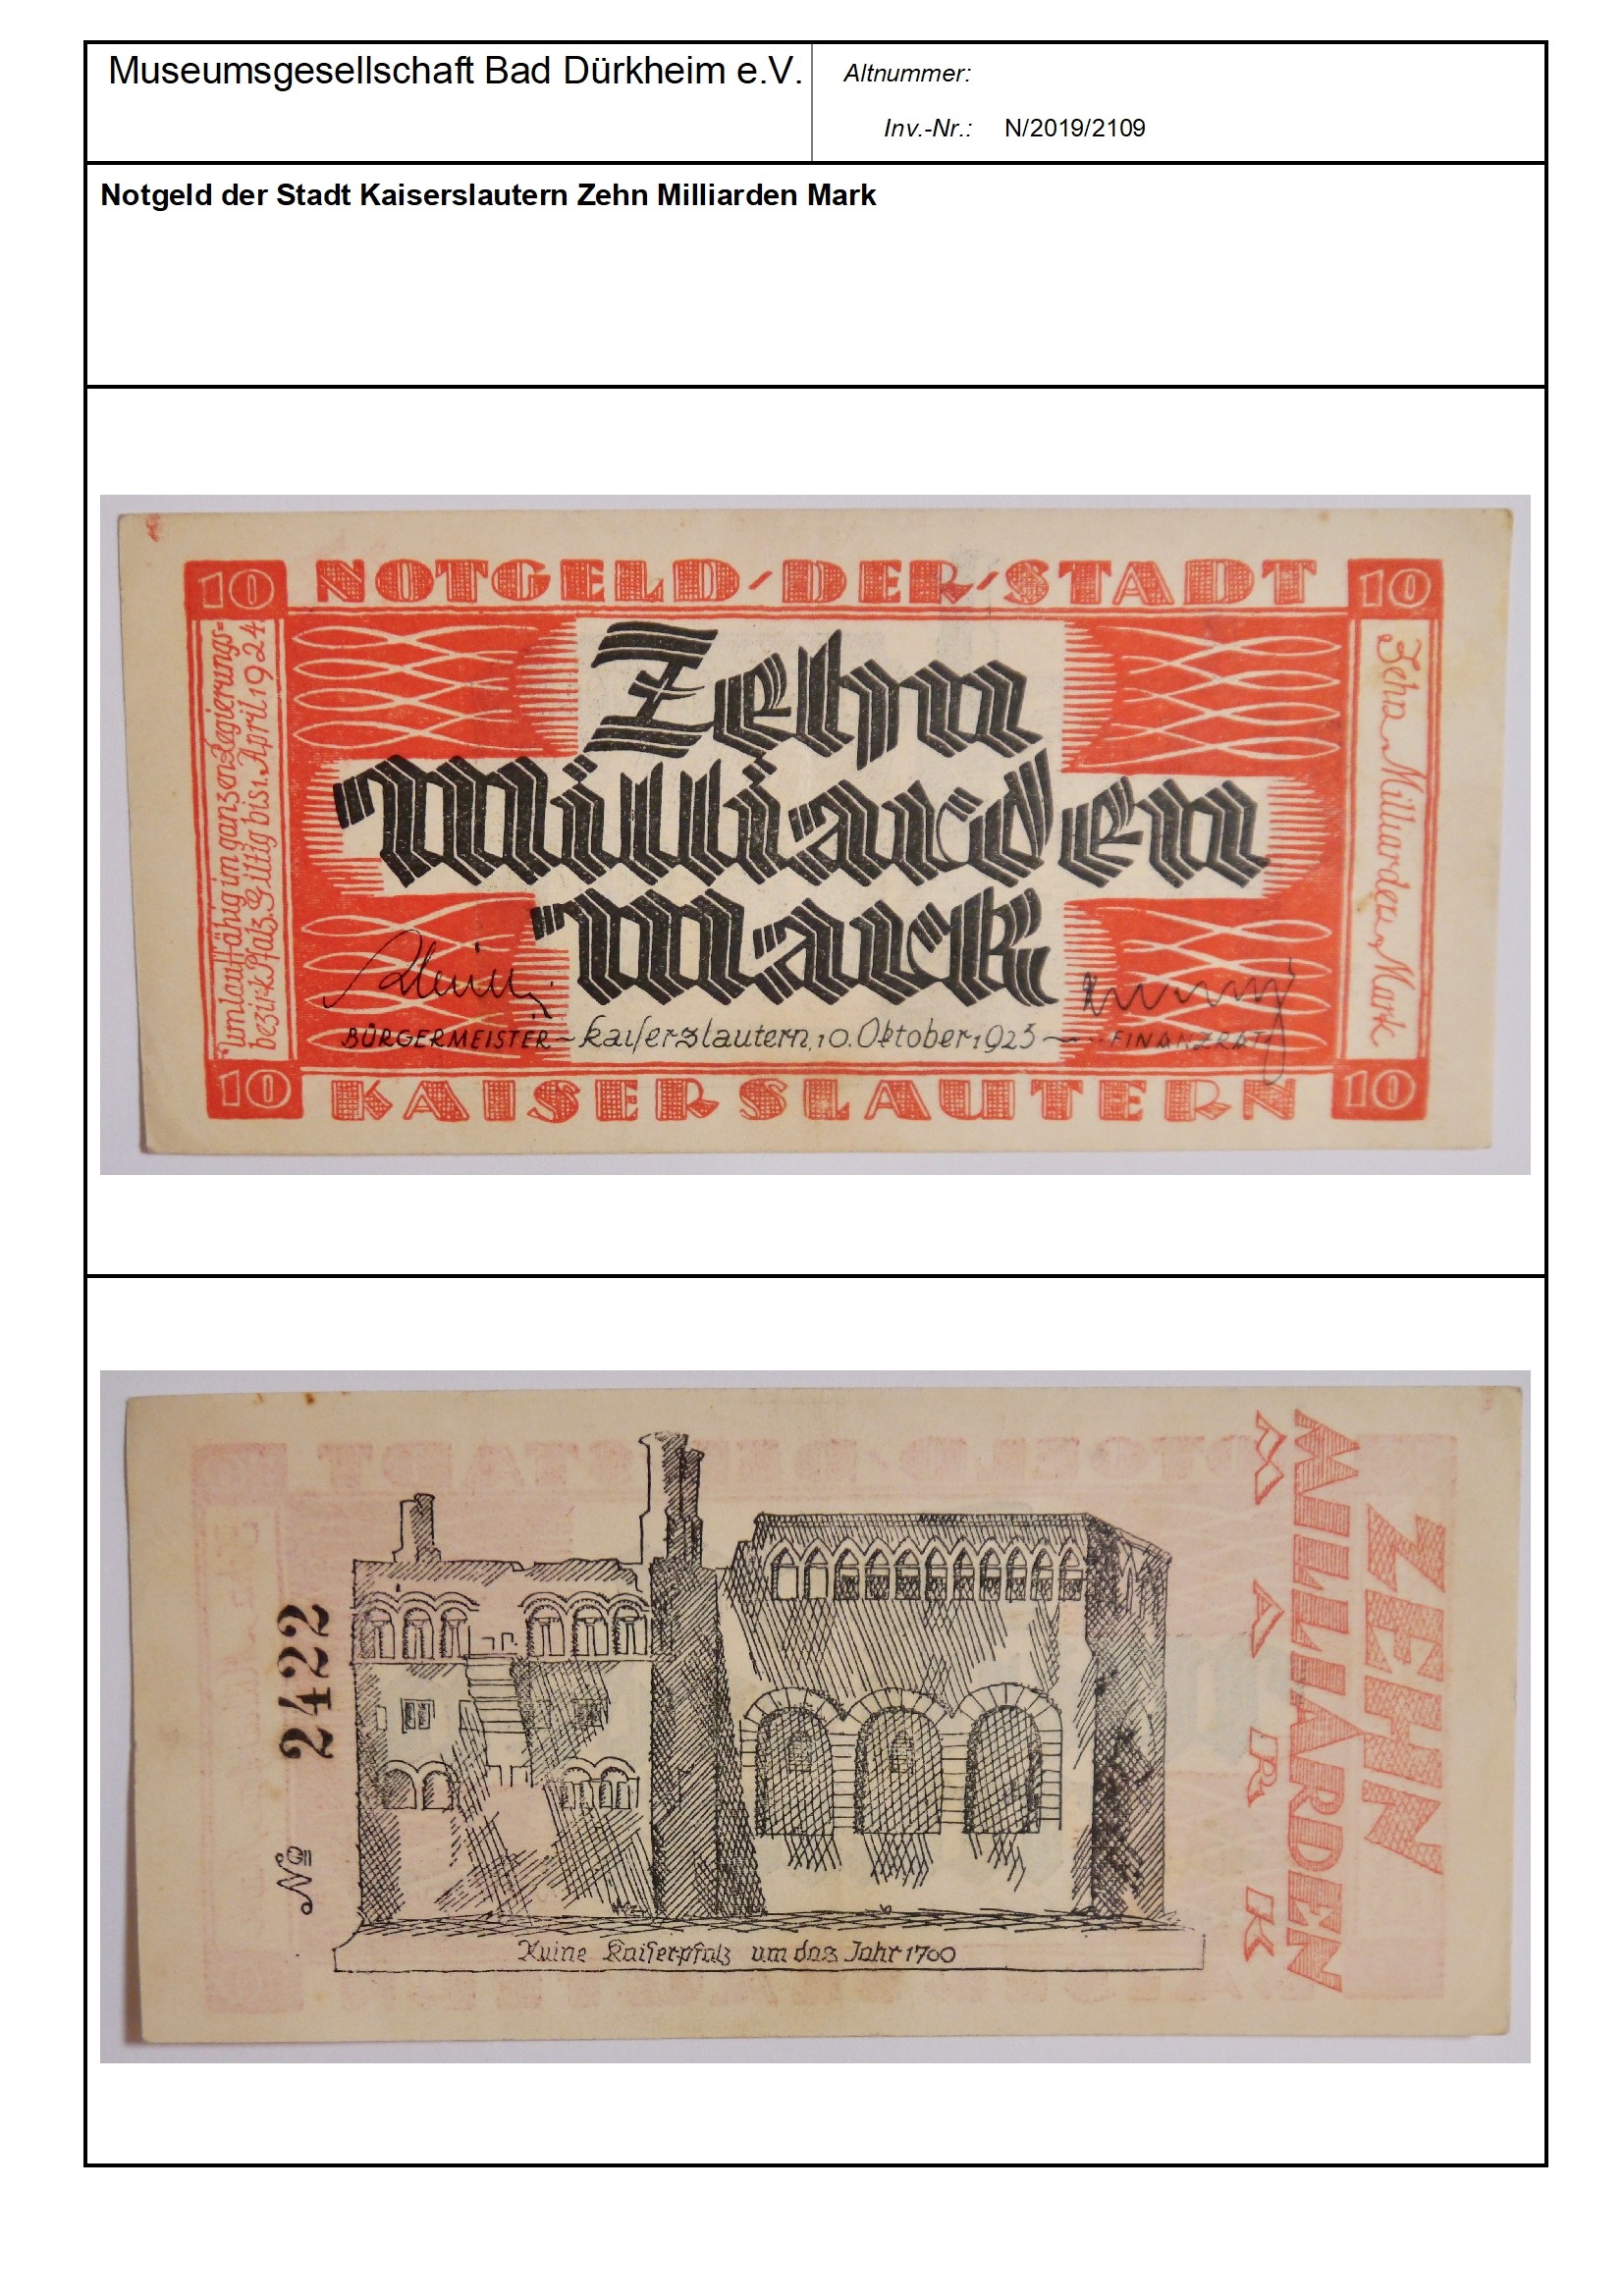 Notgeld der Stadt Kaiserslautern Zehn Milliarden Mark
Serien-Nummer: No 2422 (Museumsgesellschaft Bad Dürkheim e.V. CC BY-NC-SA)